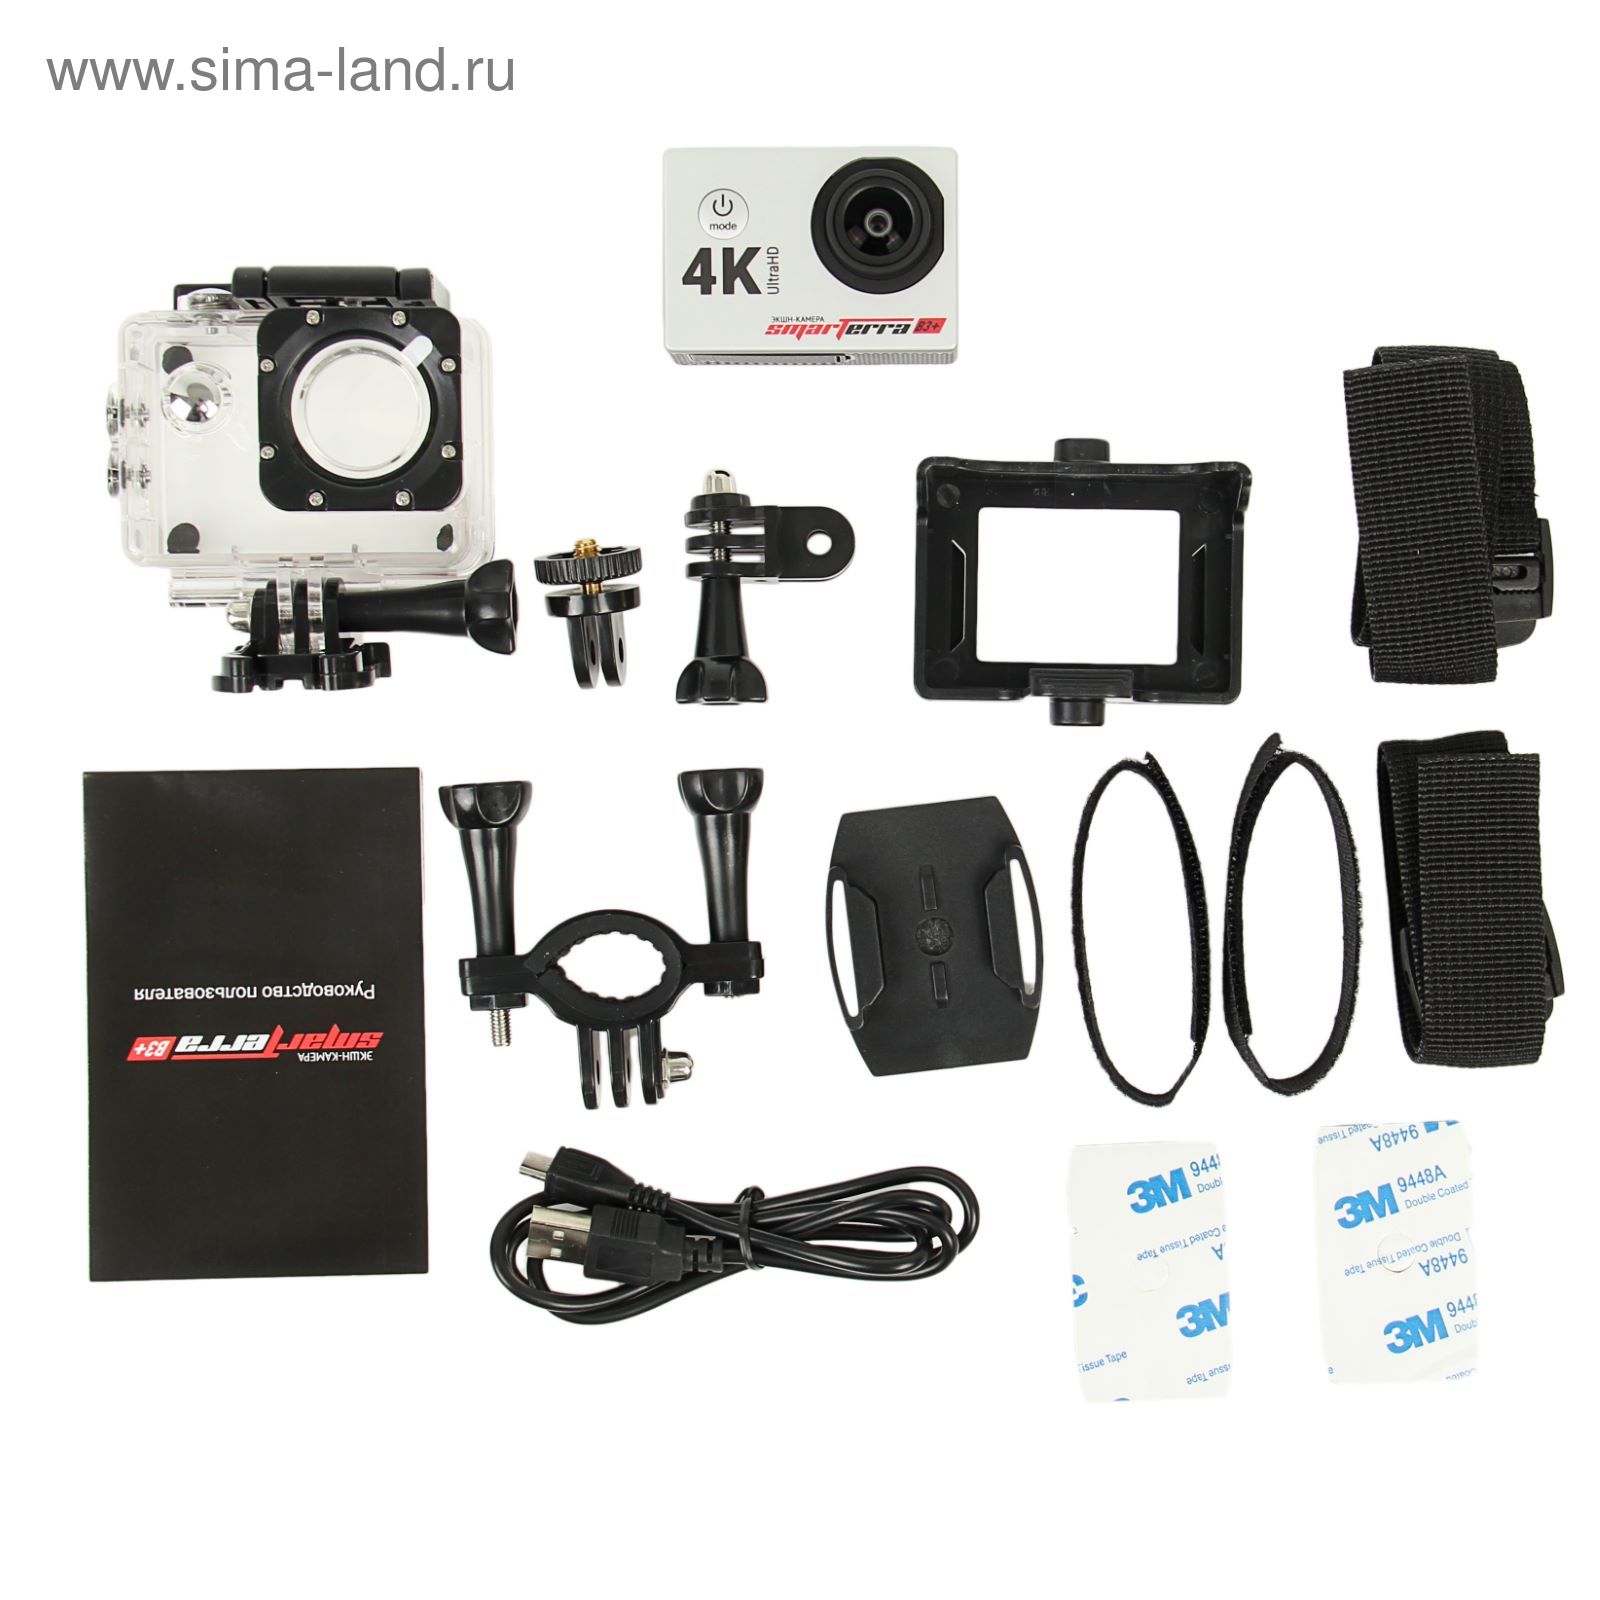 Экшн камера Smarterra B3+, 4K, 30fps, дисплей, угол обзора 170, серебристый